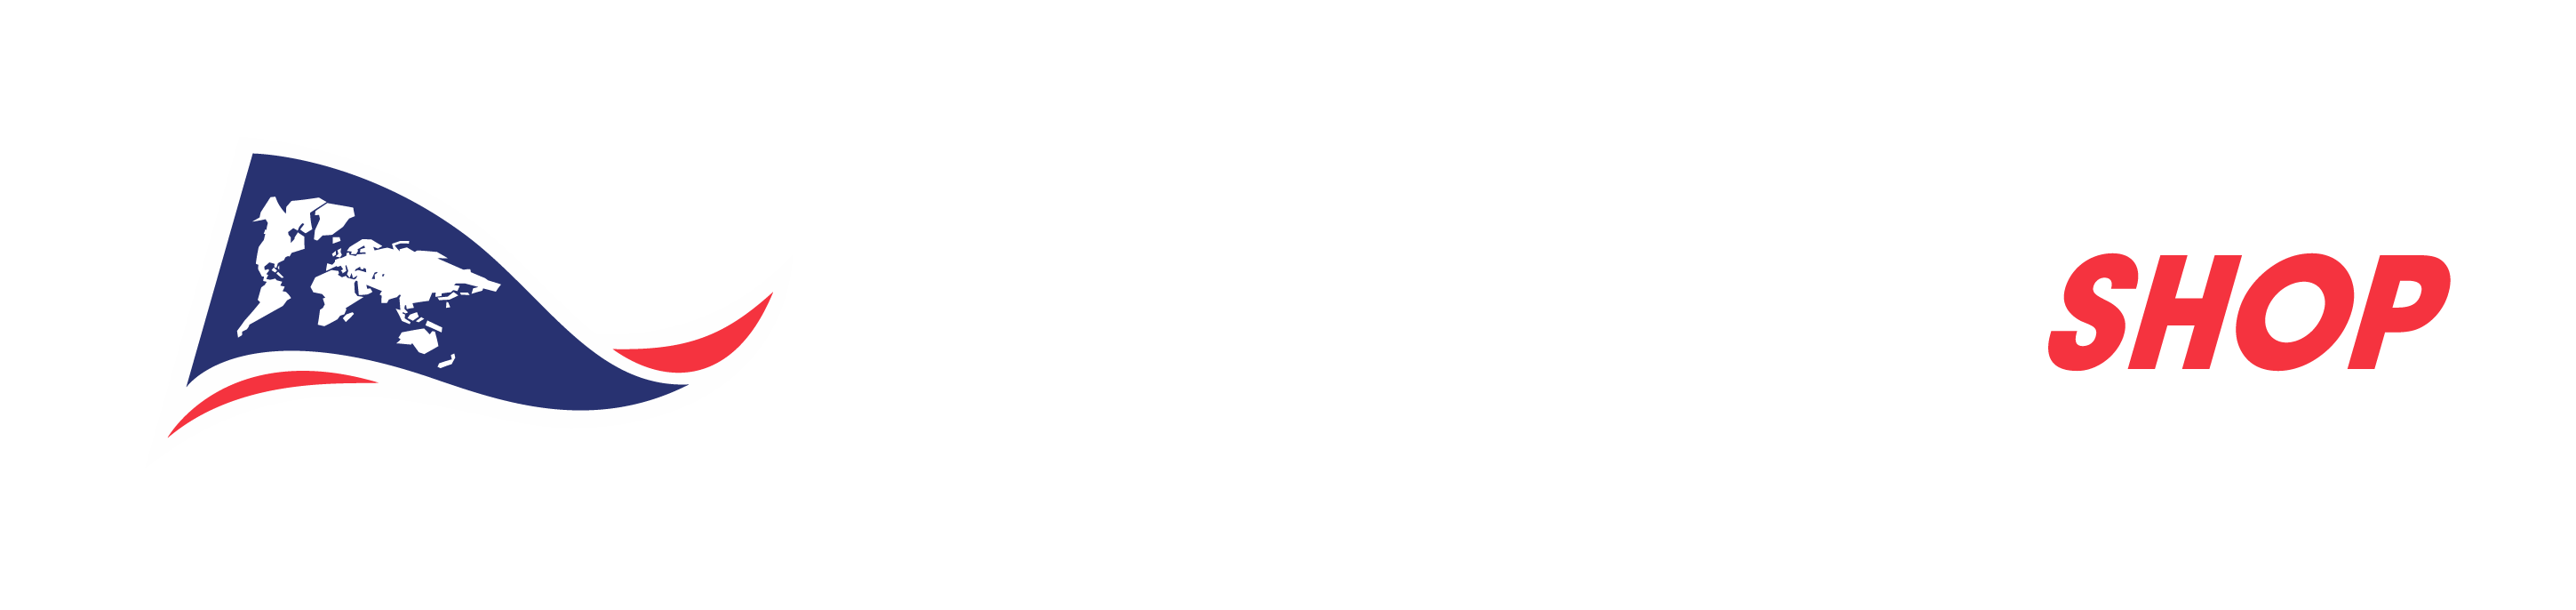 The Explorers Shop